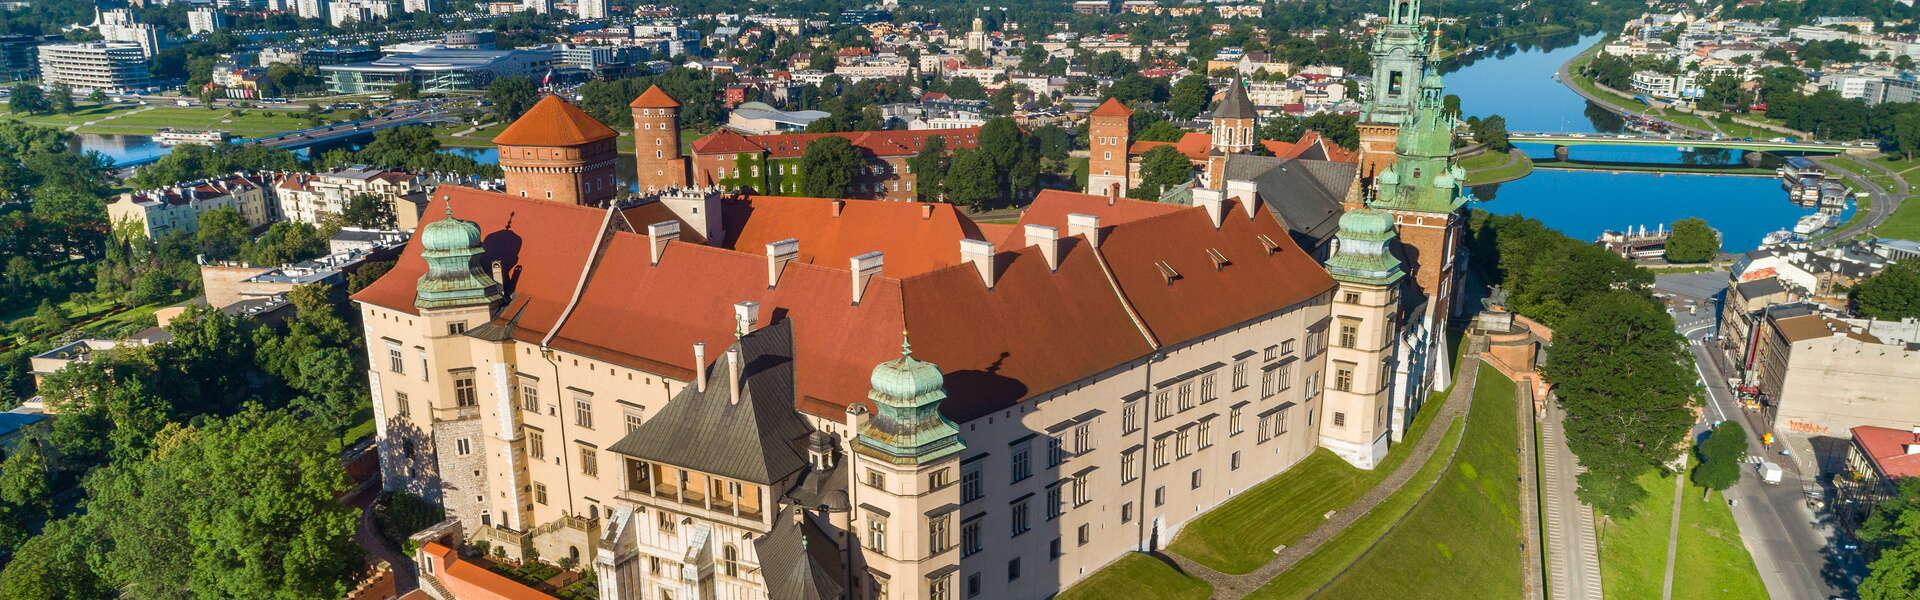 Kraków. view of the Wawel Royal Castle